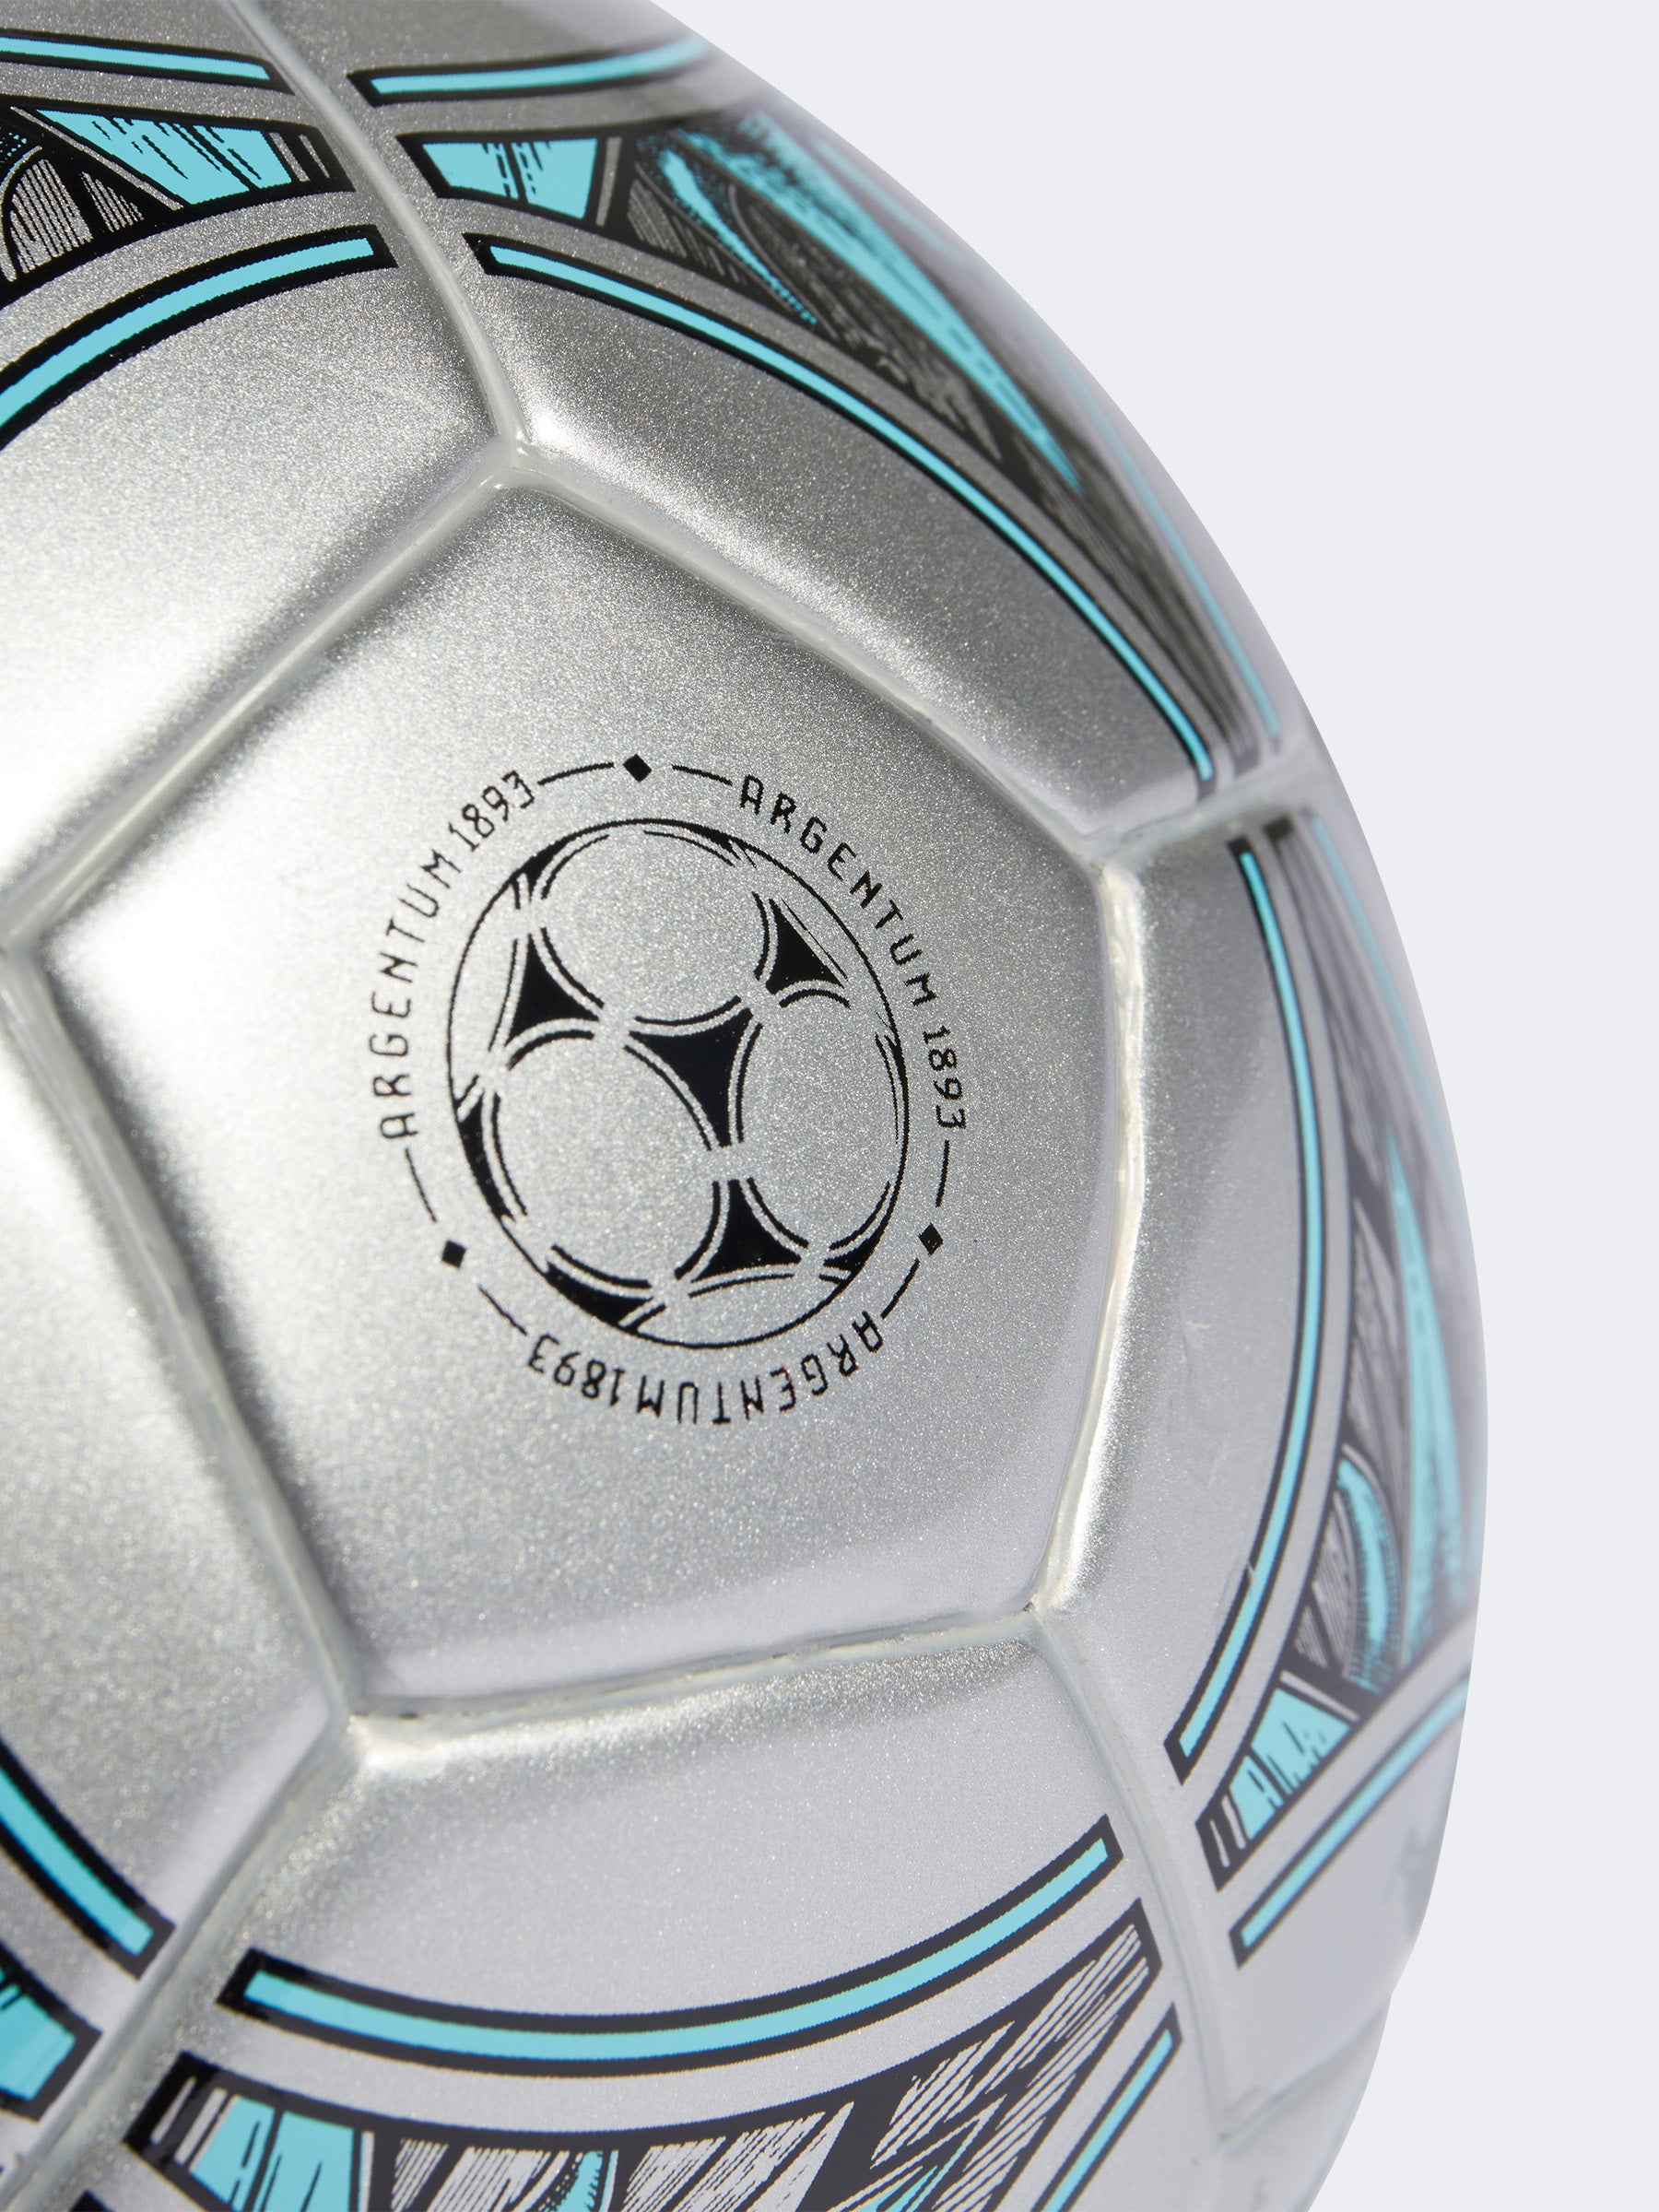 כדור כדורגל מיני MESSI- adidas performance|אדידס פרפורמנס